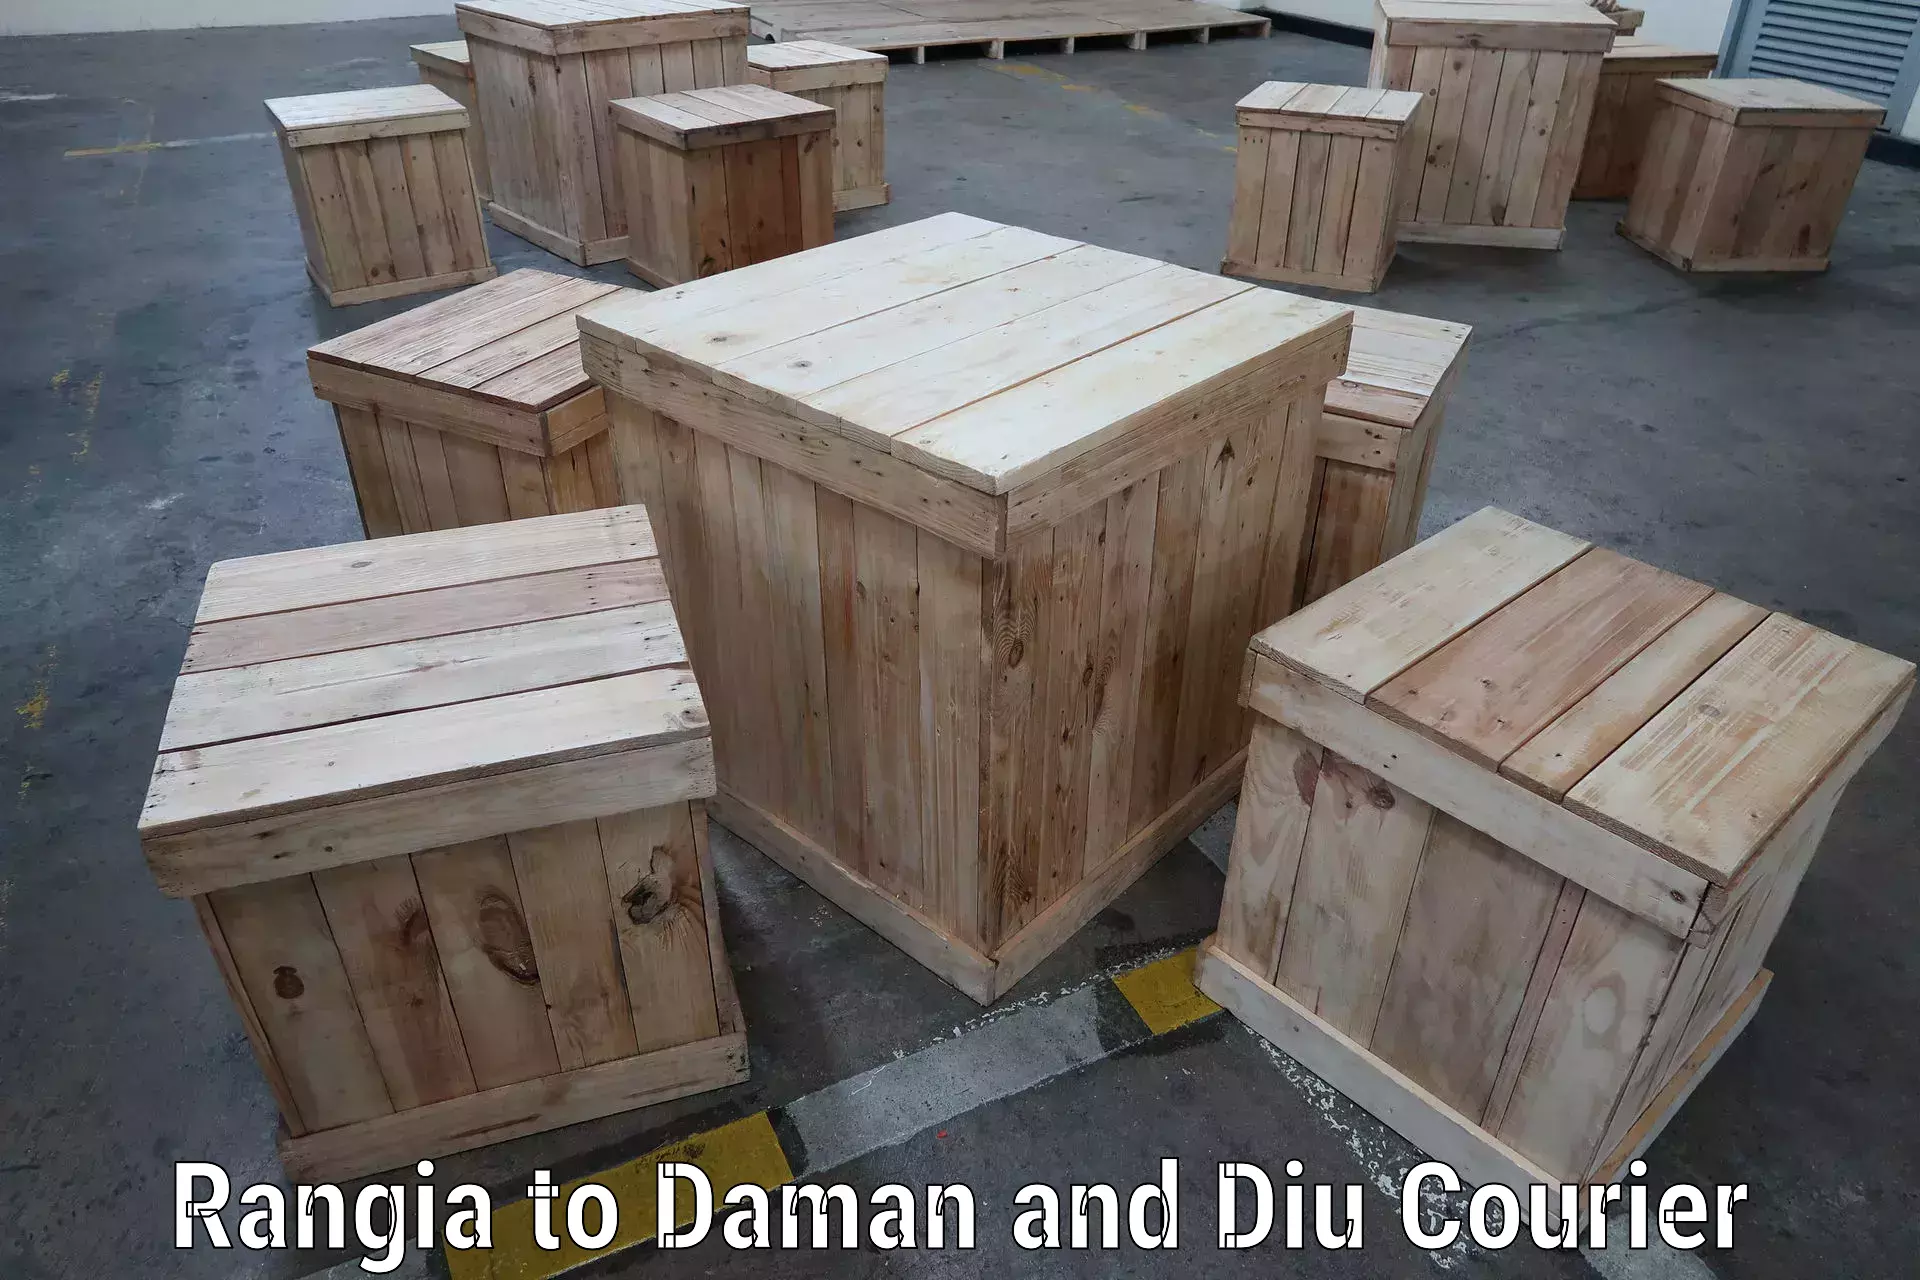 Door-to-door freight service Rangia to Diu